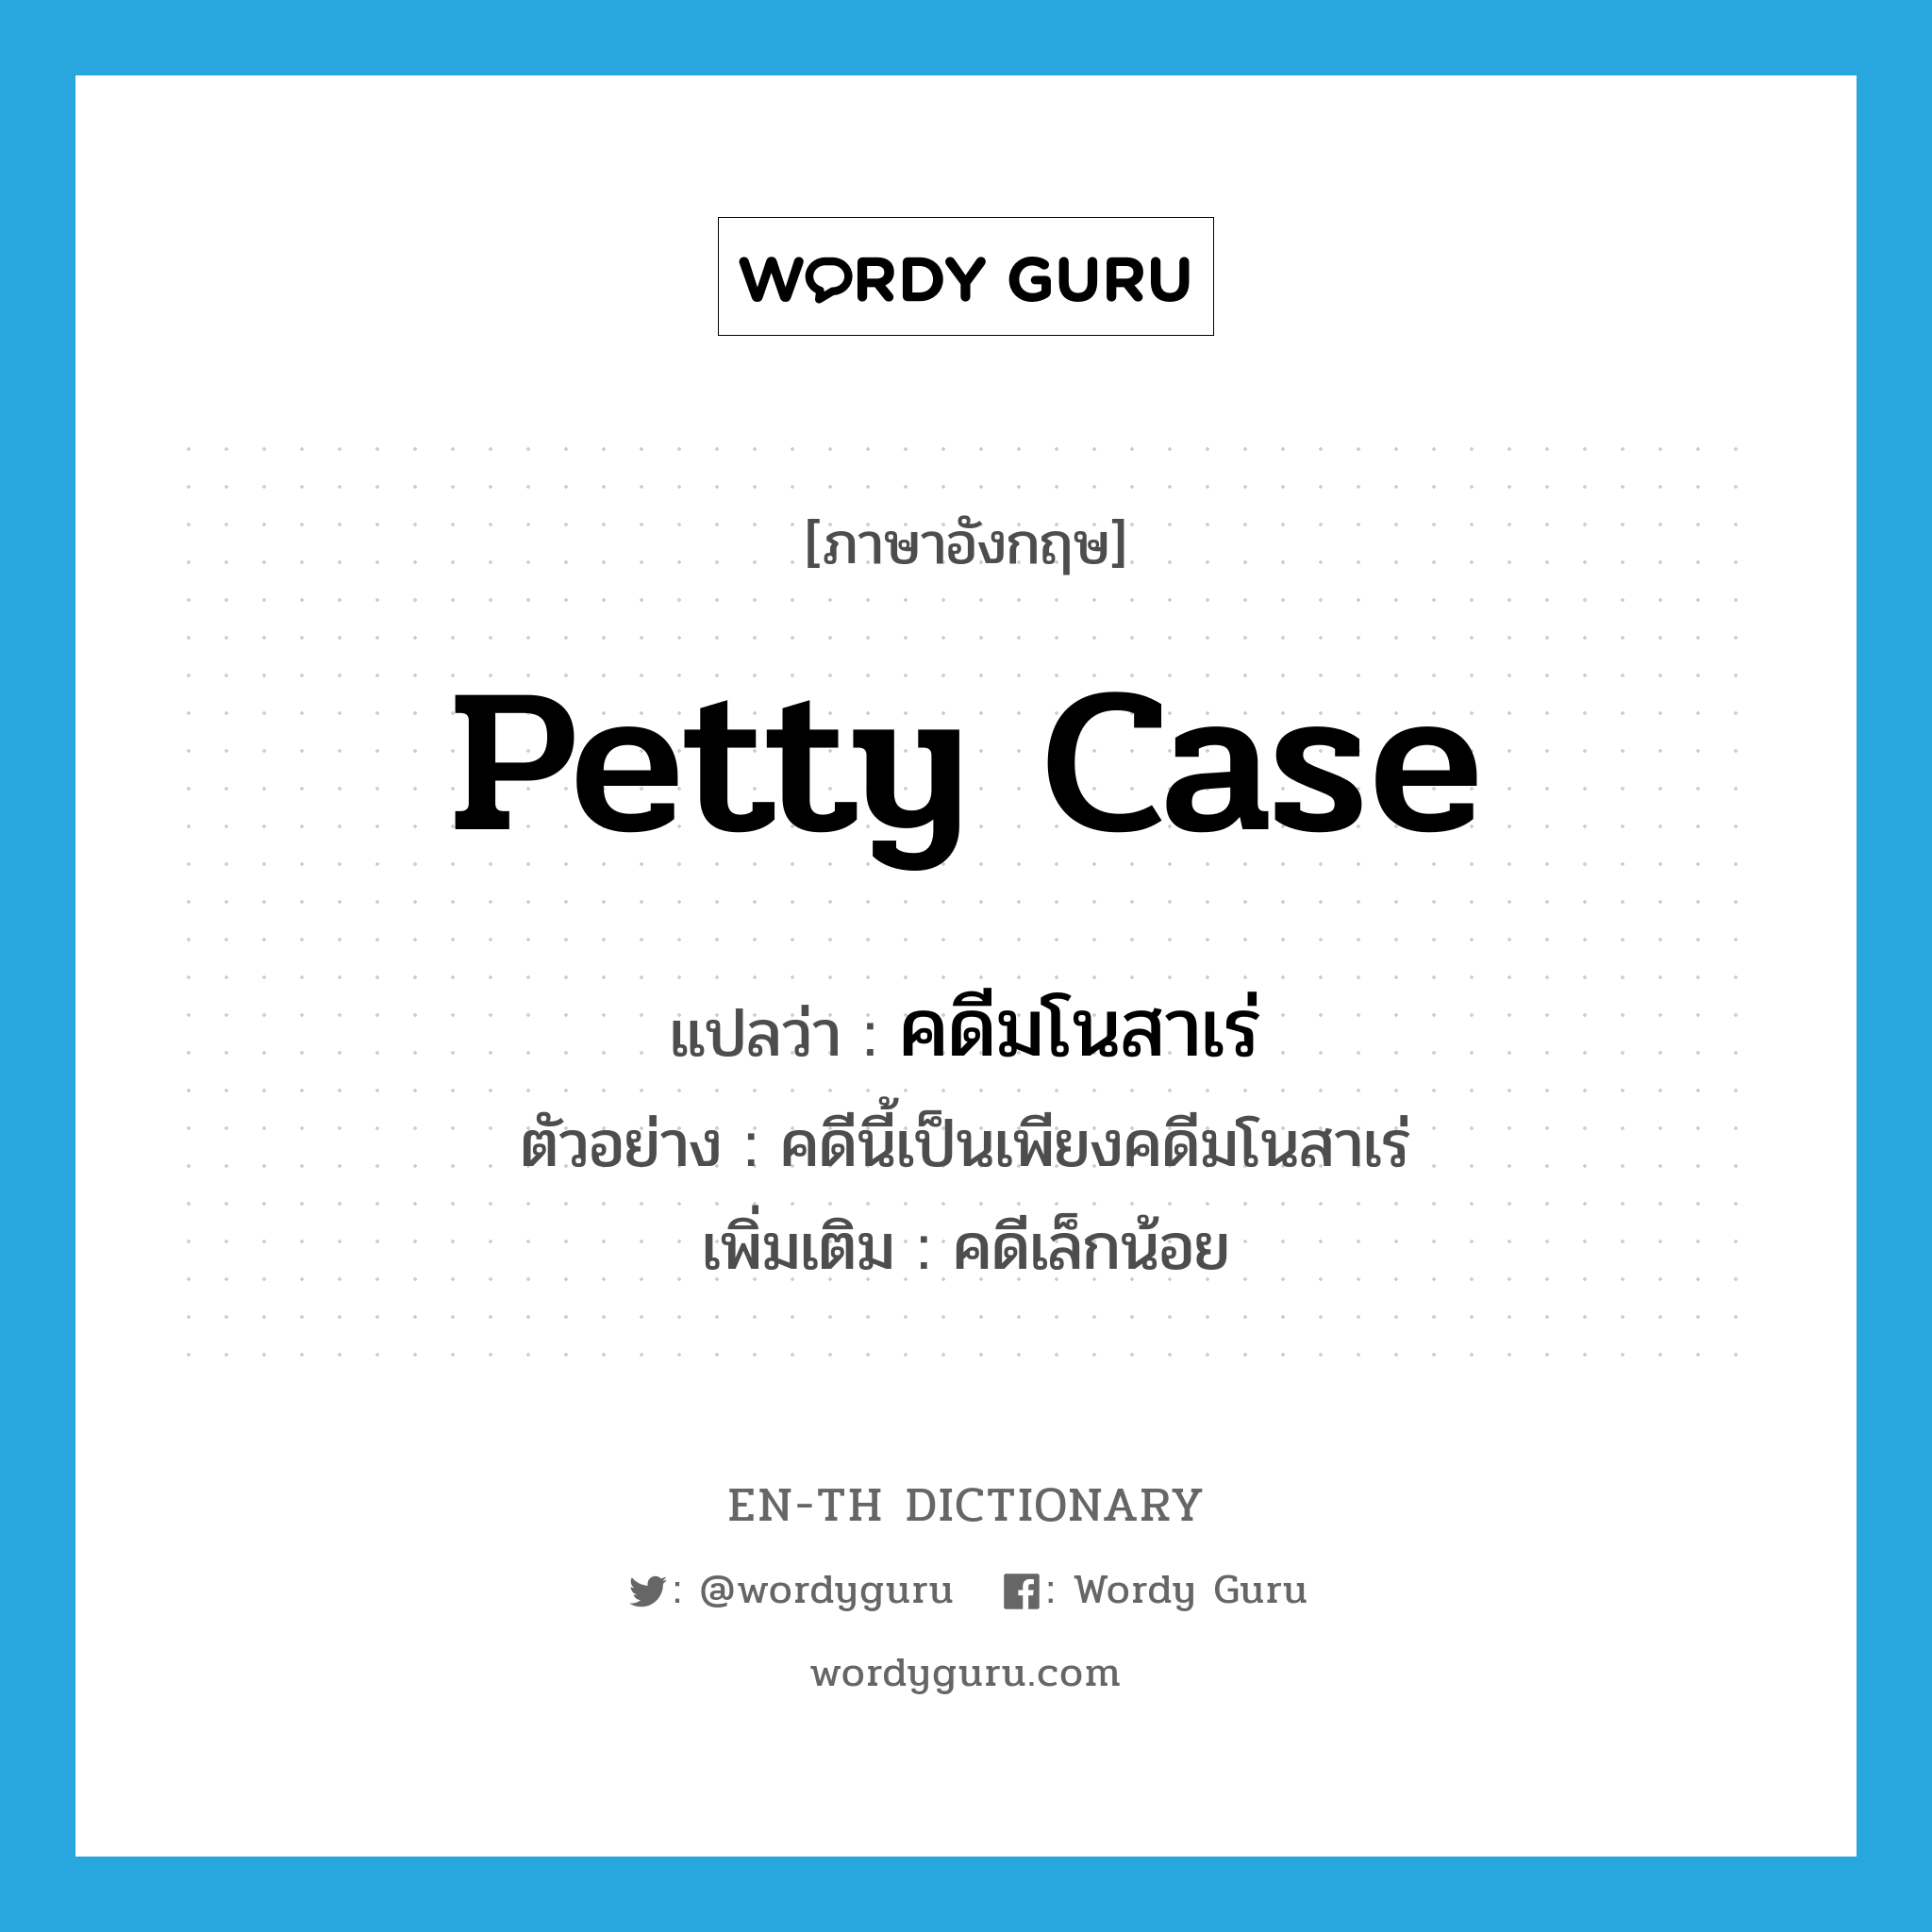 petty case แปลว่า?, คำศัพท์ภาษาอังกฤษ petty case แปลว่า คดีมโนสาเร่ ประเภท N ตัวอย่าง คดีนี้เป็นเพียงคดีมโนสาเร่ เพิ่มเติม คดีเล็กน้อย หมวด N